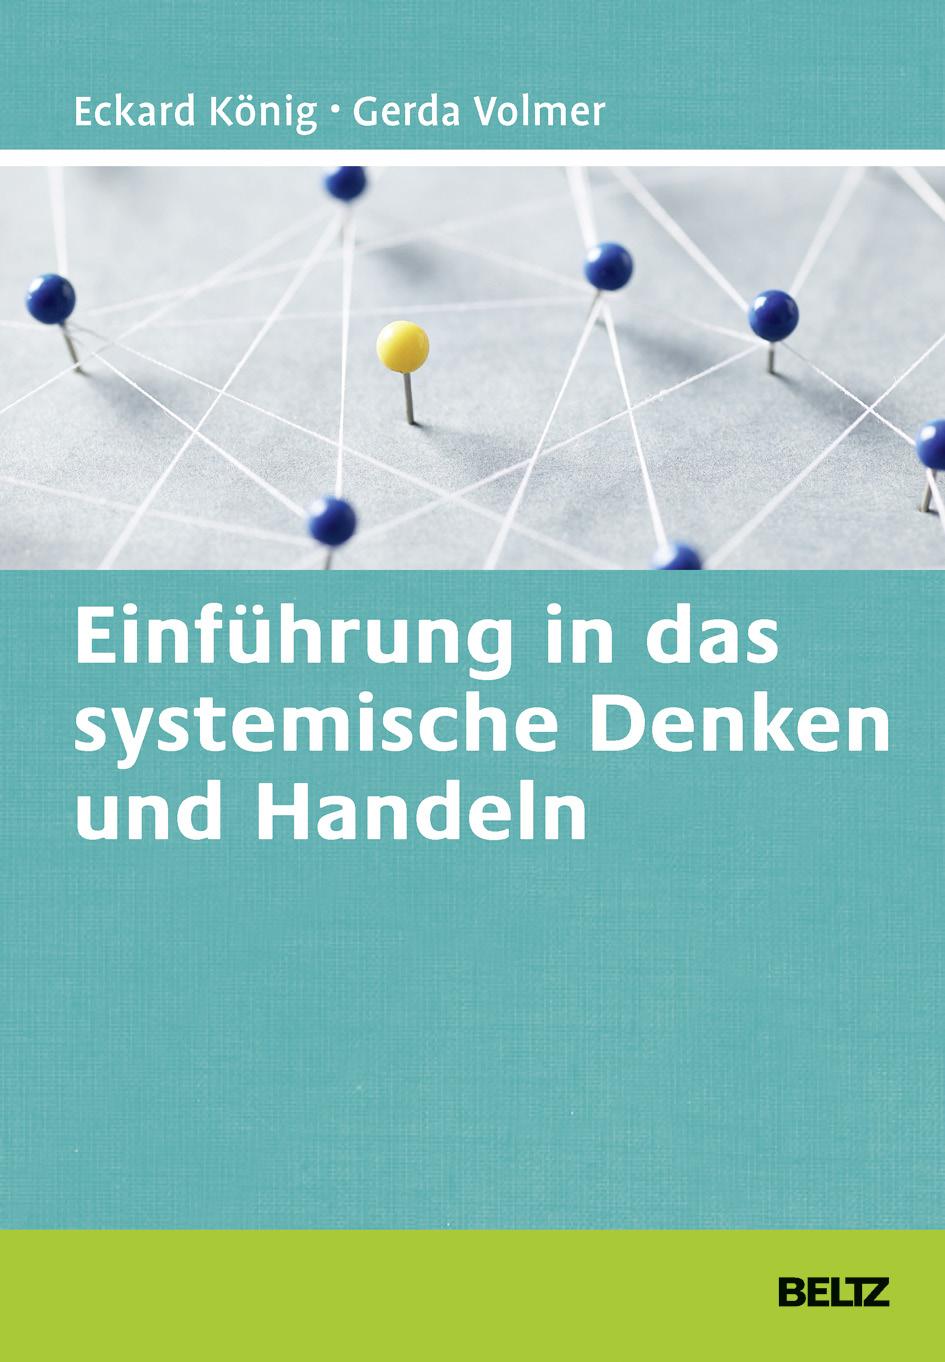 König, Eckard / Volmer, Gerda (2012): Handbuch Systemisches Coaching 2. Auflage.